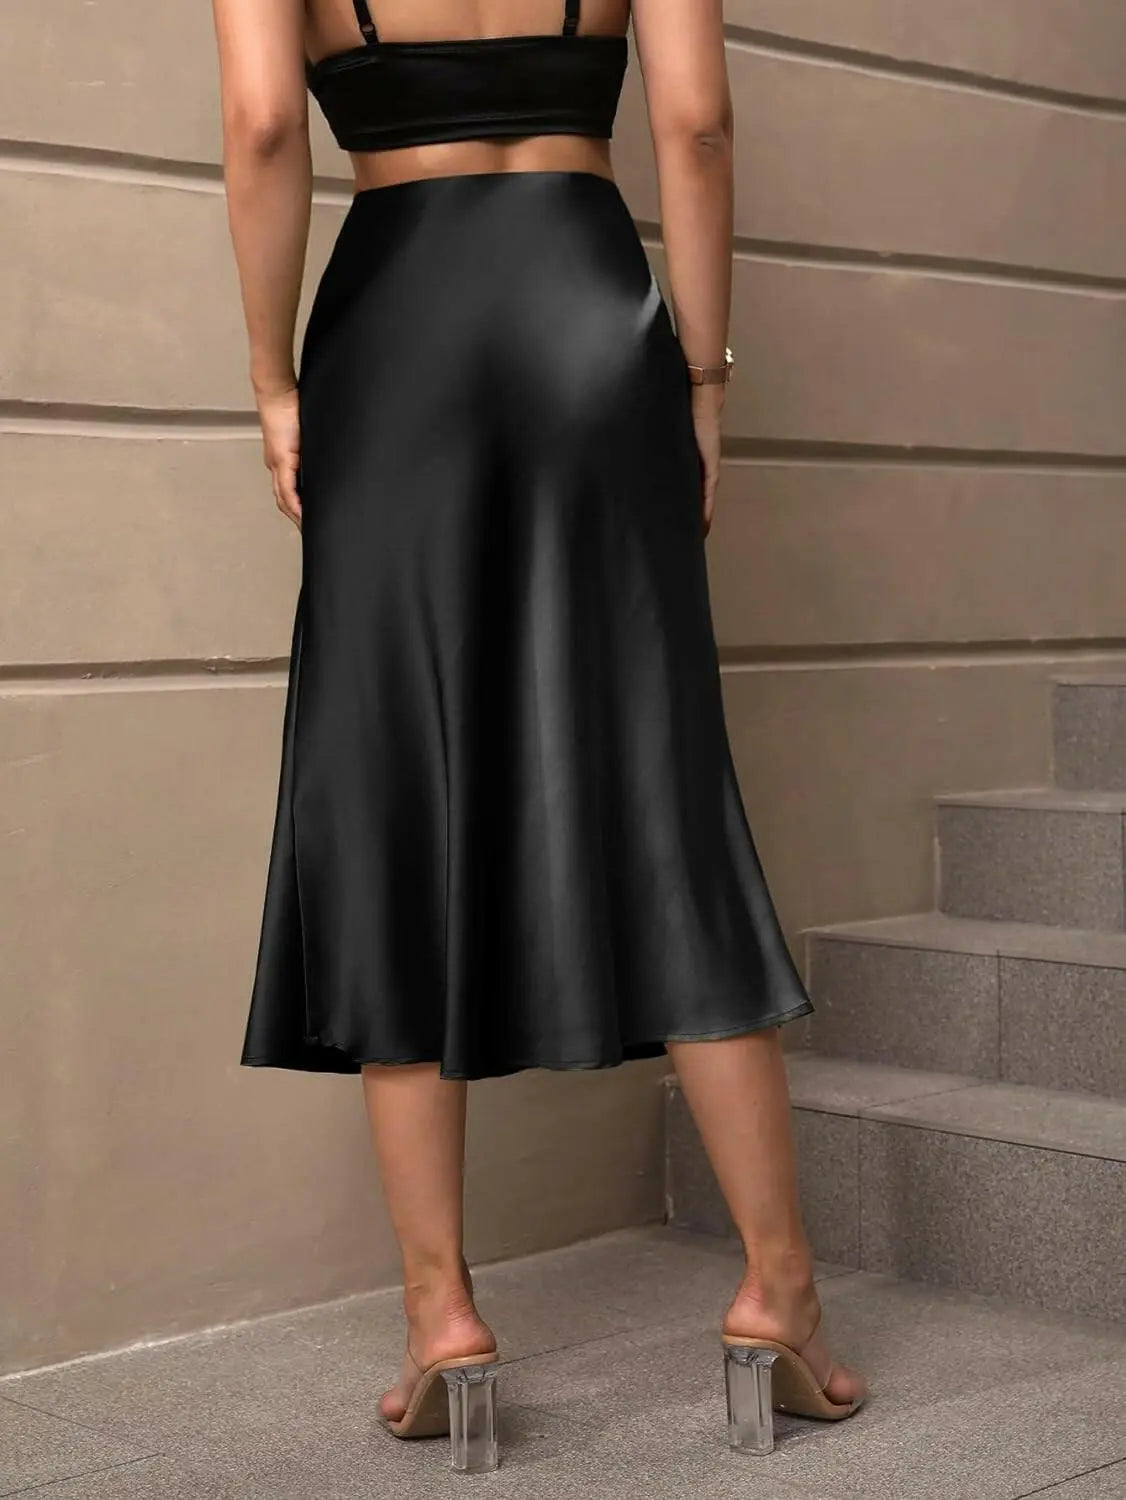 Women's Satin High Waist Solid Skirt Zipper Elegant Midi Skirt